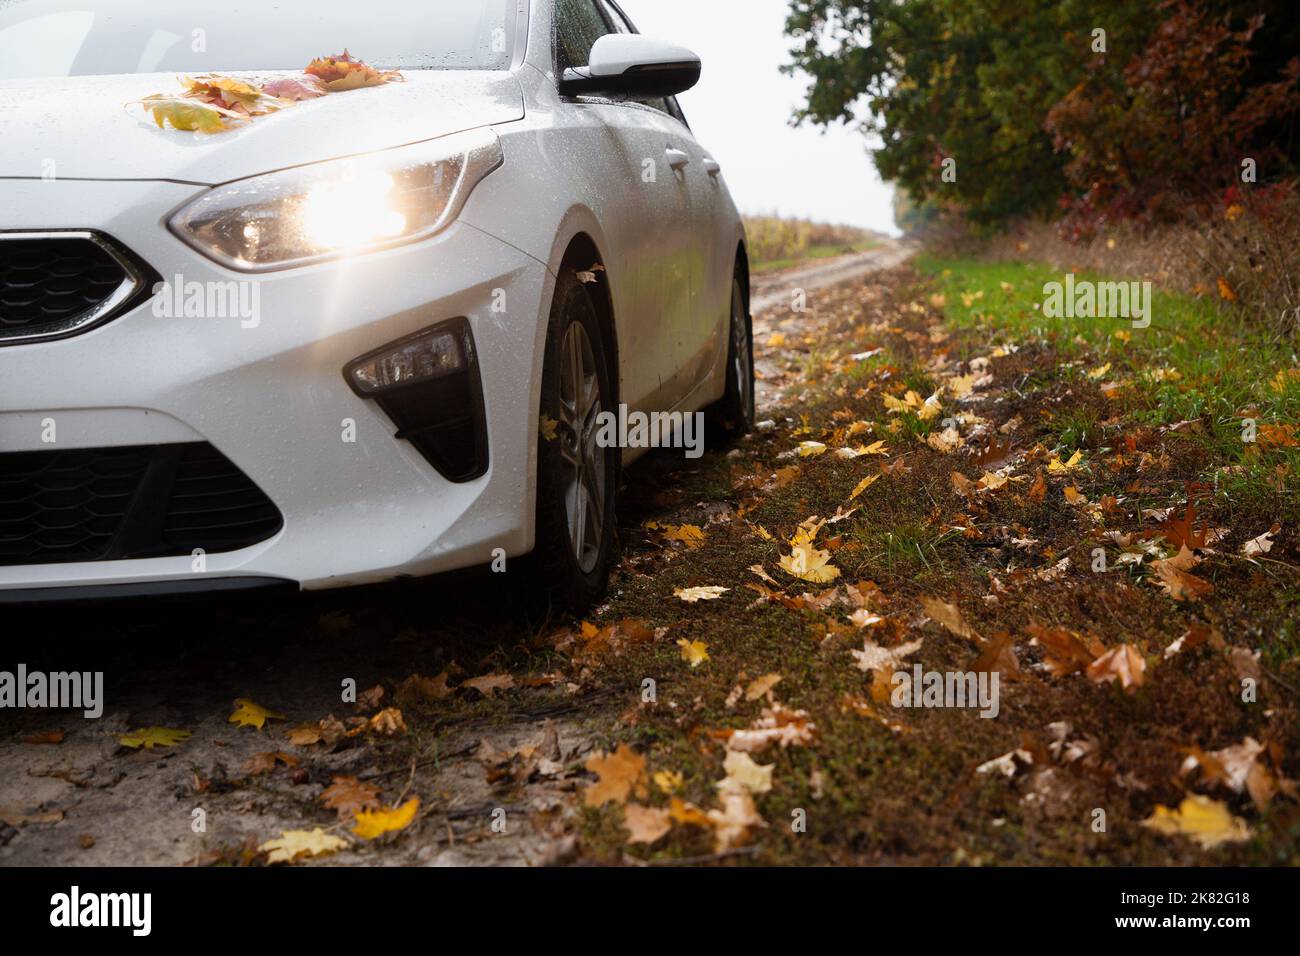 Weißes Auto auf einer unbefestigten Straße, übersät mit gefallenen gelben, orangefarbenen, braunen Blättern, an einem bewölkten Herbsttag im Park. Romantisches Wochenende mit dem Auto Stockfoto